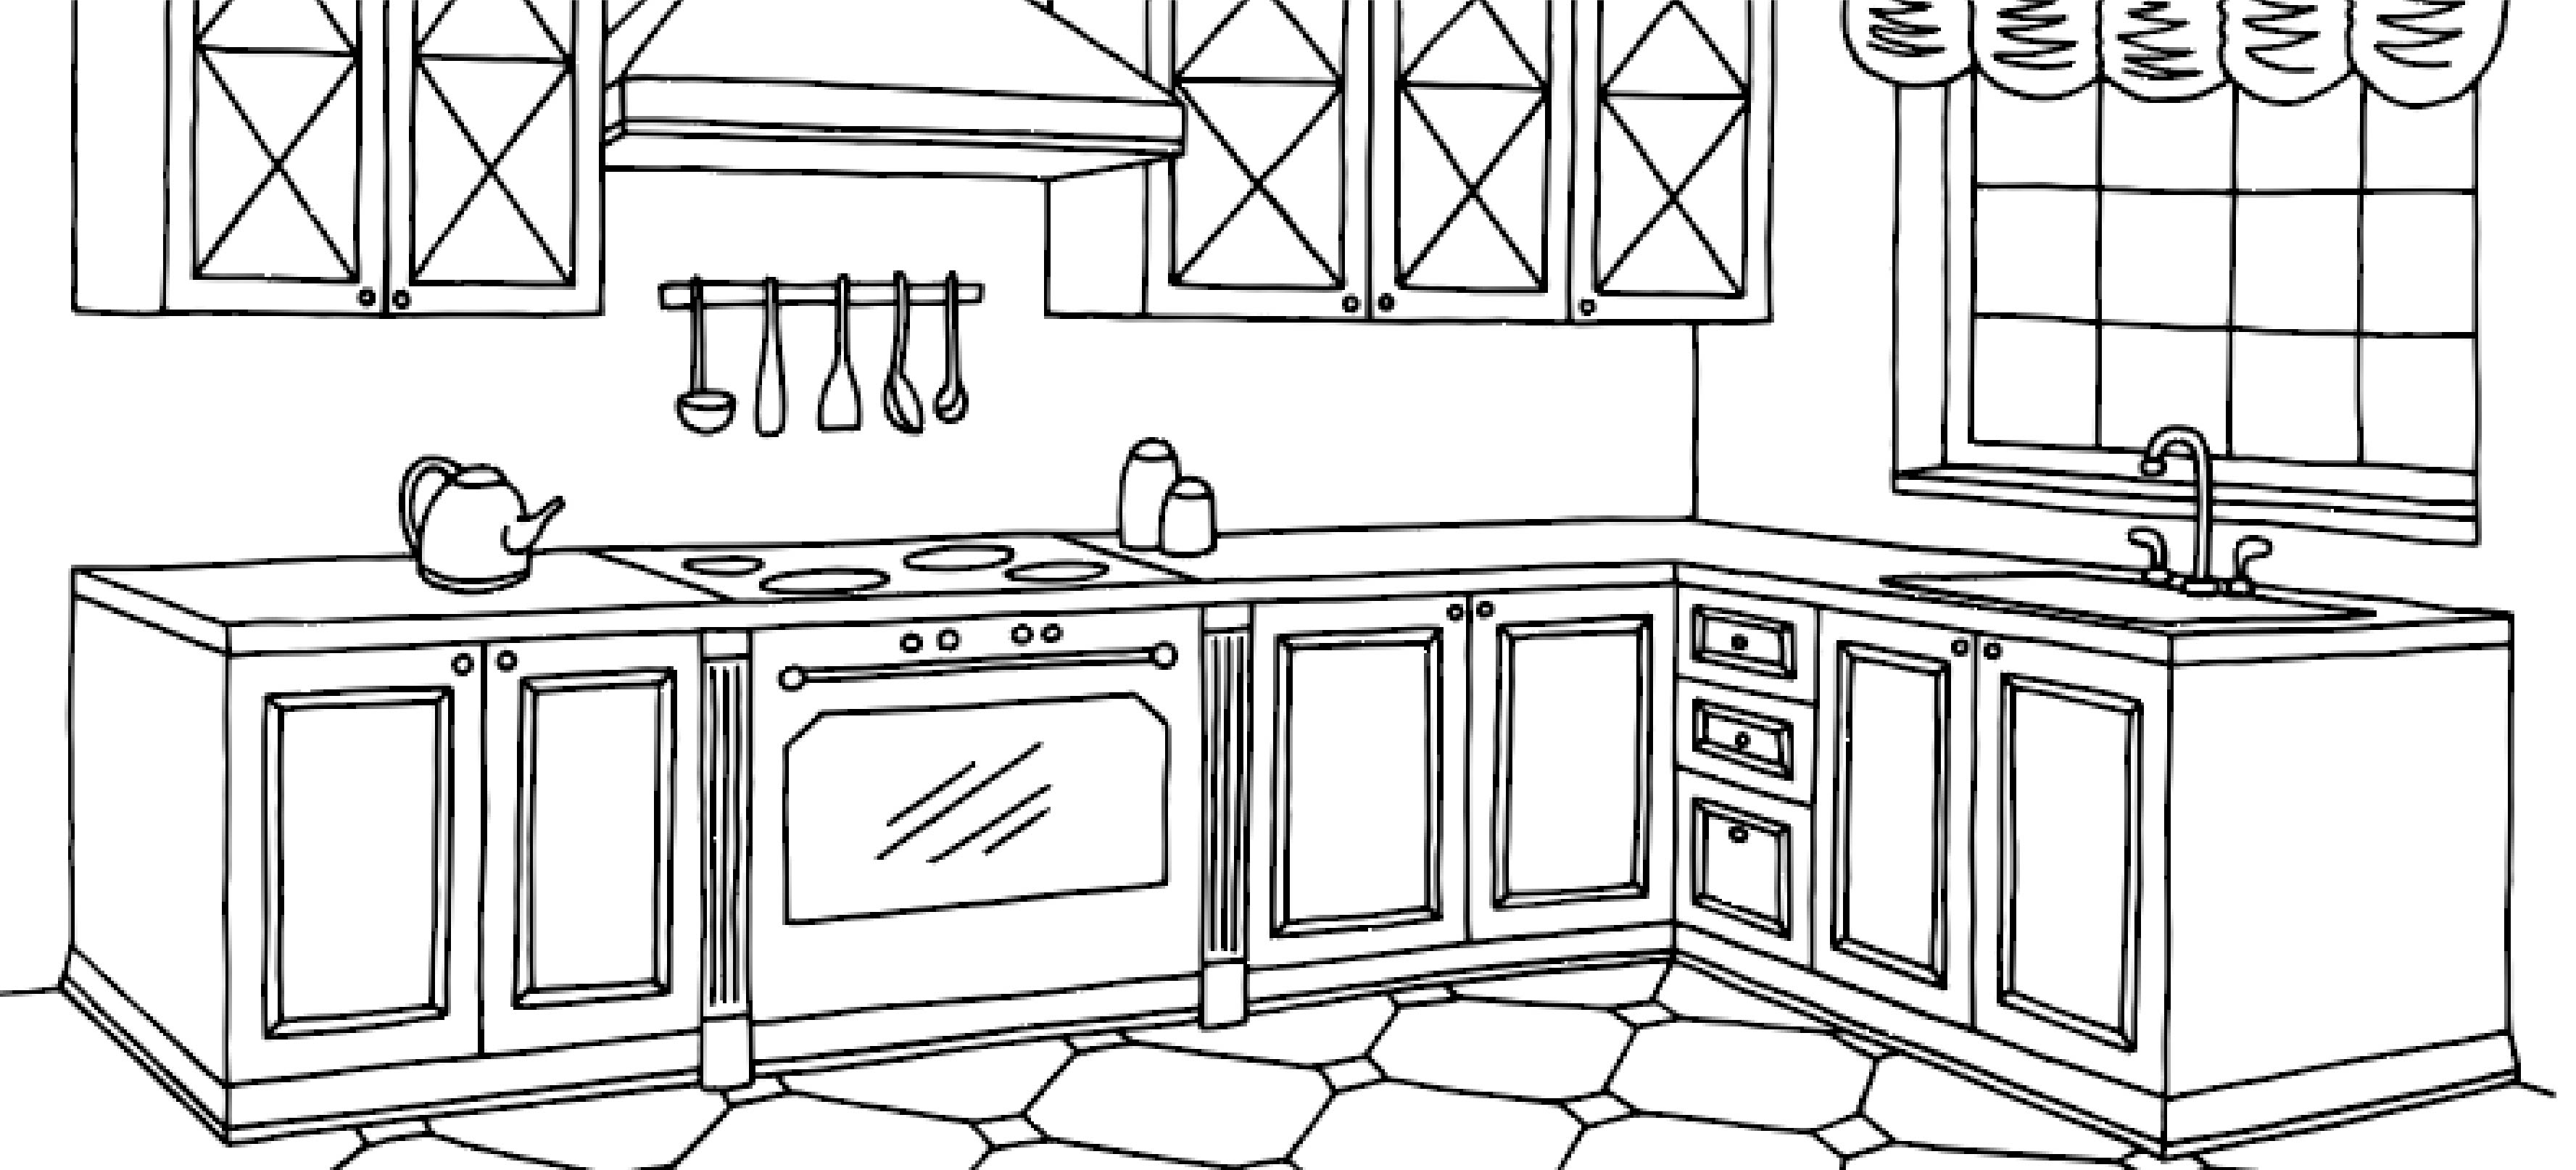 Modular Kitchen Design Ideas - DesignCafe | Modern kitchen design, Kitchen  interior design decor, Modern kitchen interiors